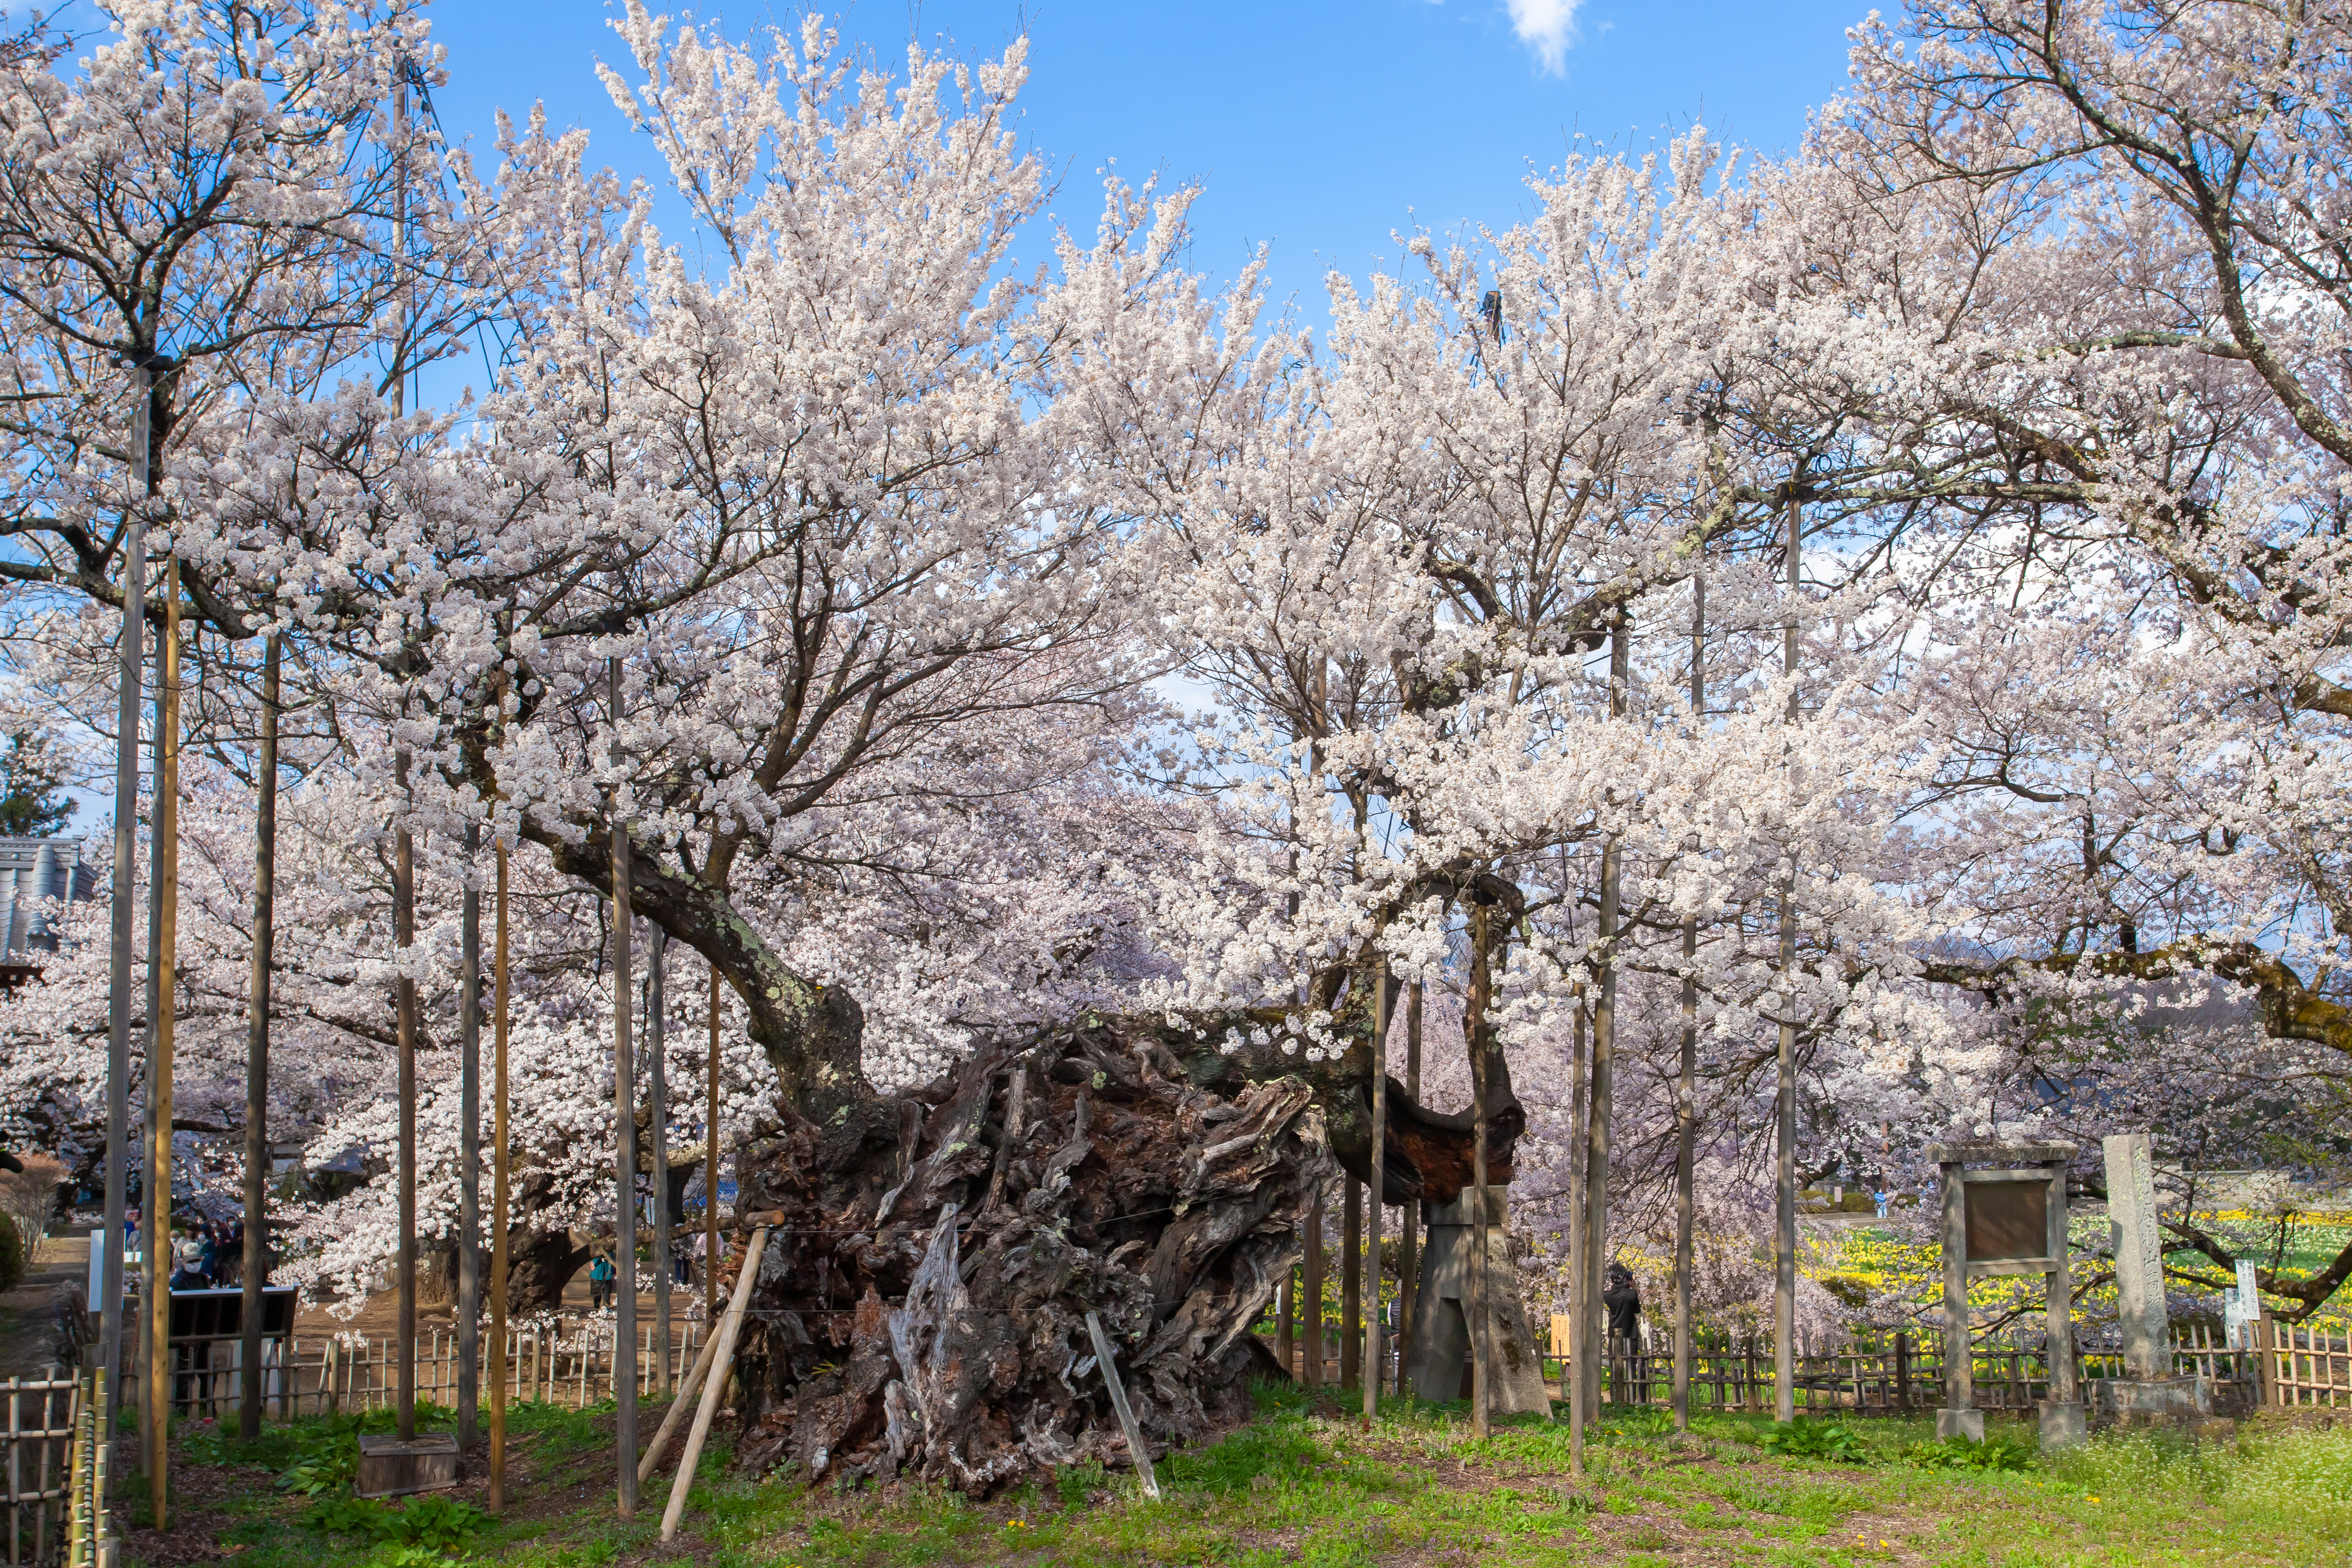 [全国旅行支援対象] 山高神代桜&甚六桜といちご狩り食べ放題バスツアーのおすすめポイント詳細